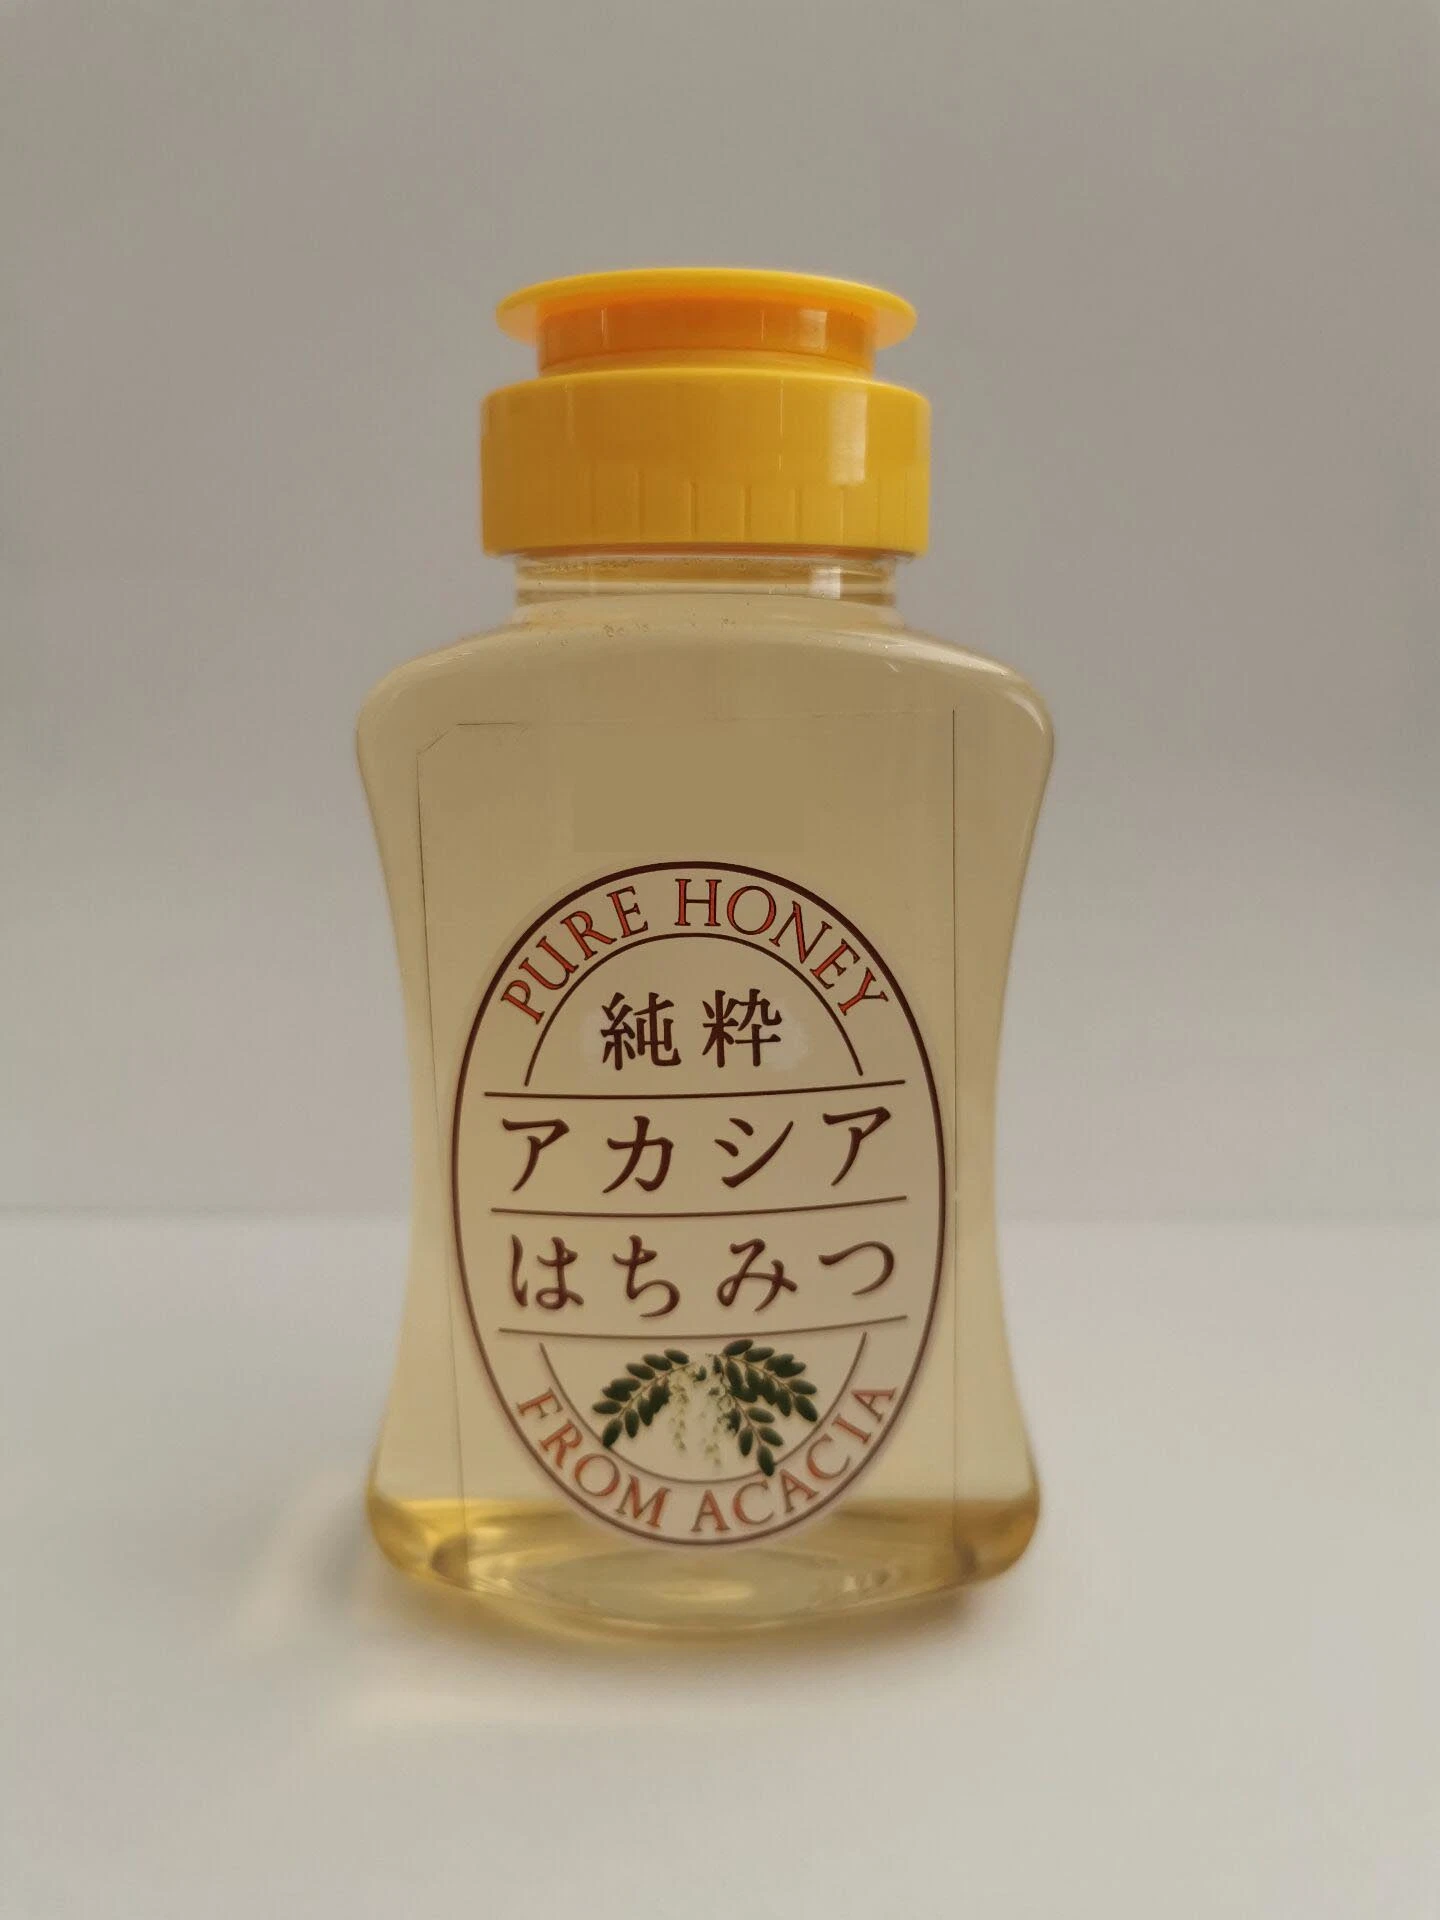 Reiner Honig, Japanischer Honig, Honigprodukt, Akazienhonig